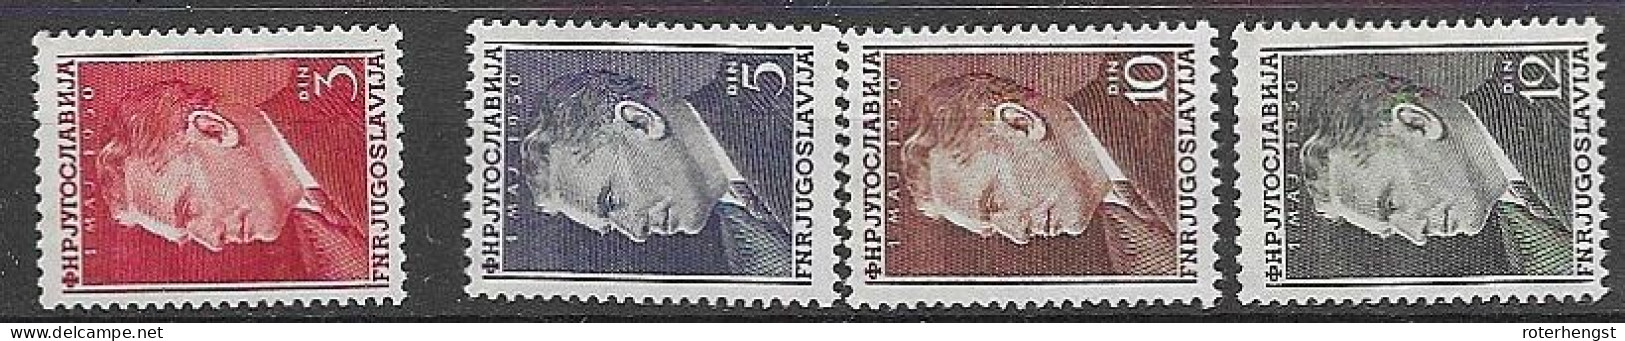 Yugoslavia Mh * (30 Euros) 1950 Complete Tito Set - Neufs